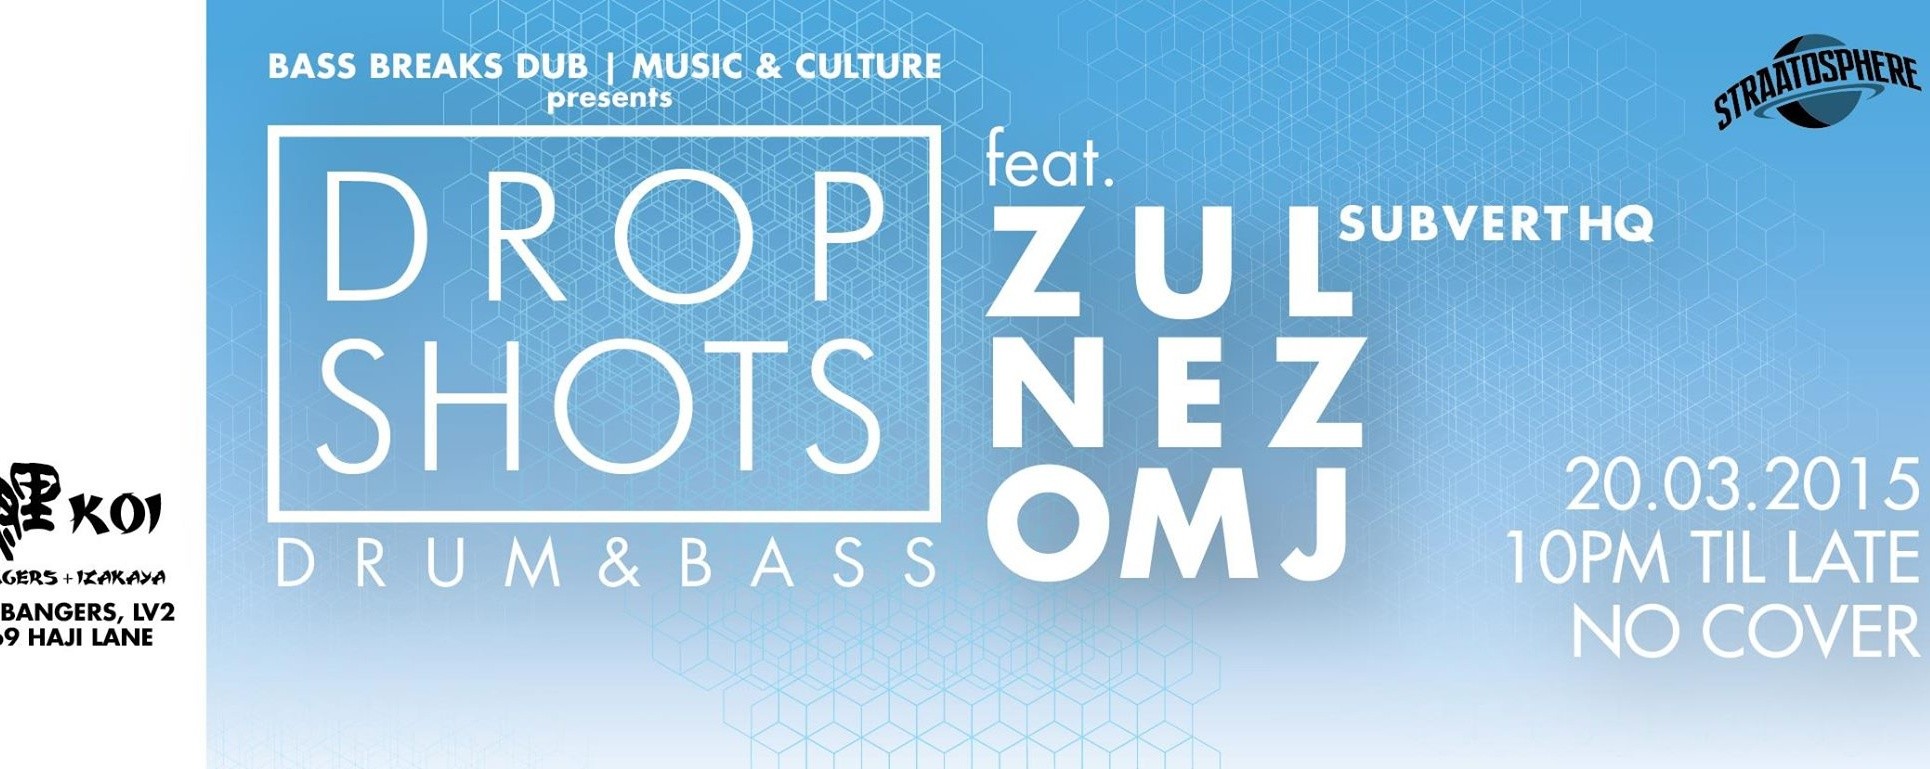 DROP SHOTS: Drum & BASS featuring ZUL / Subvert HQ